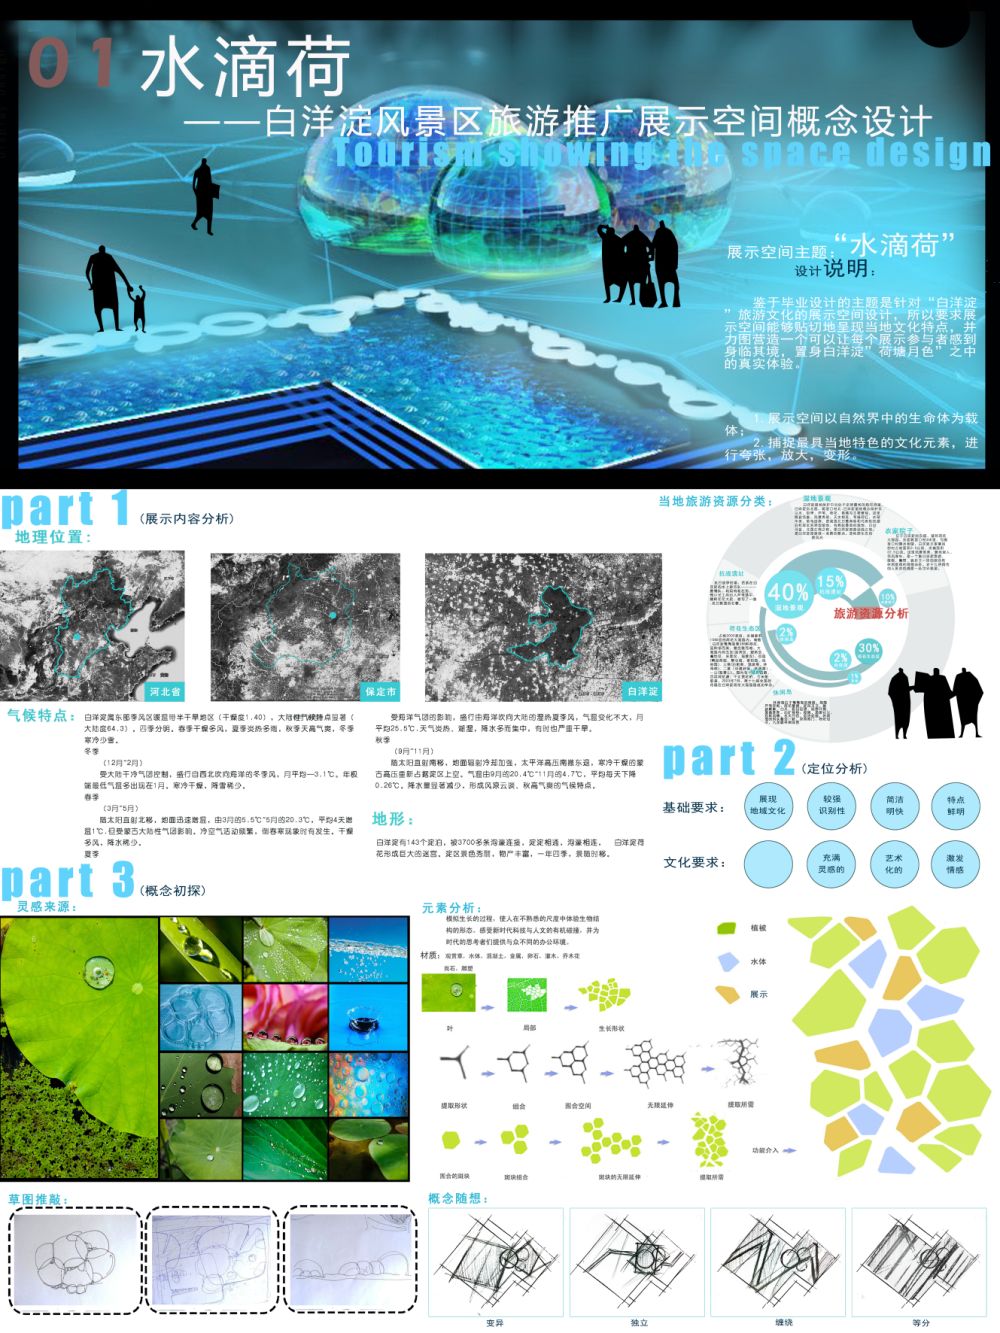 《水滴荷》 - 白洋淀风景区旅游推广展示空间概念设计-1